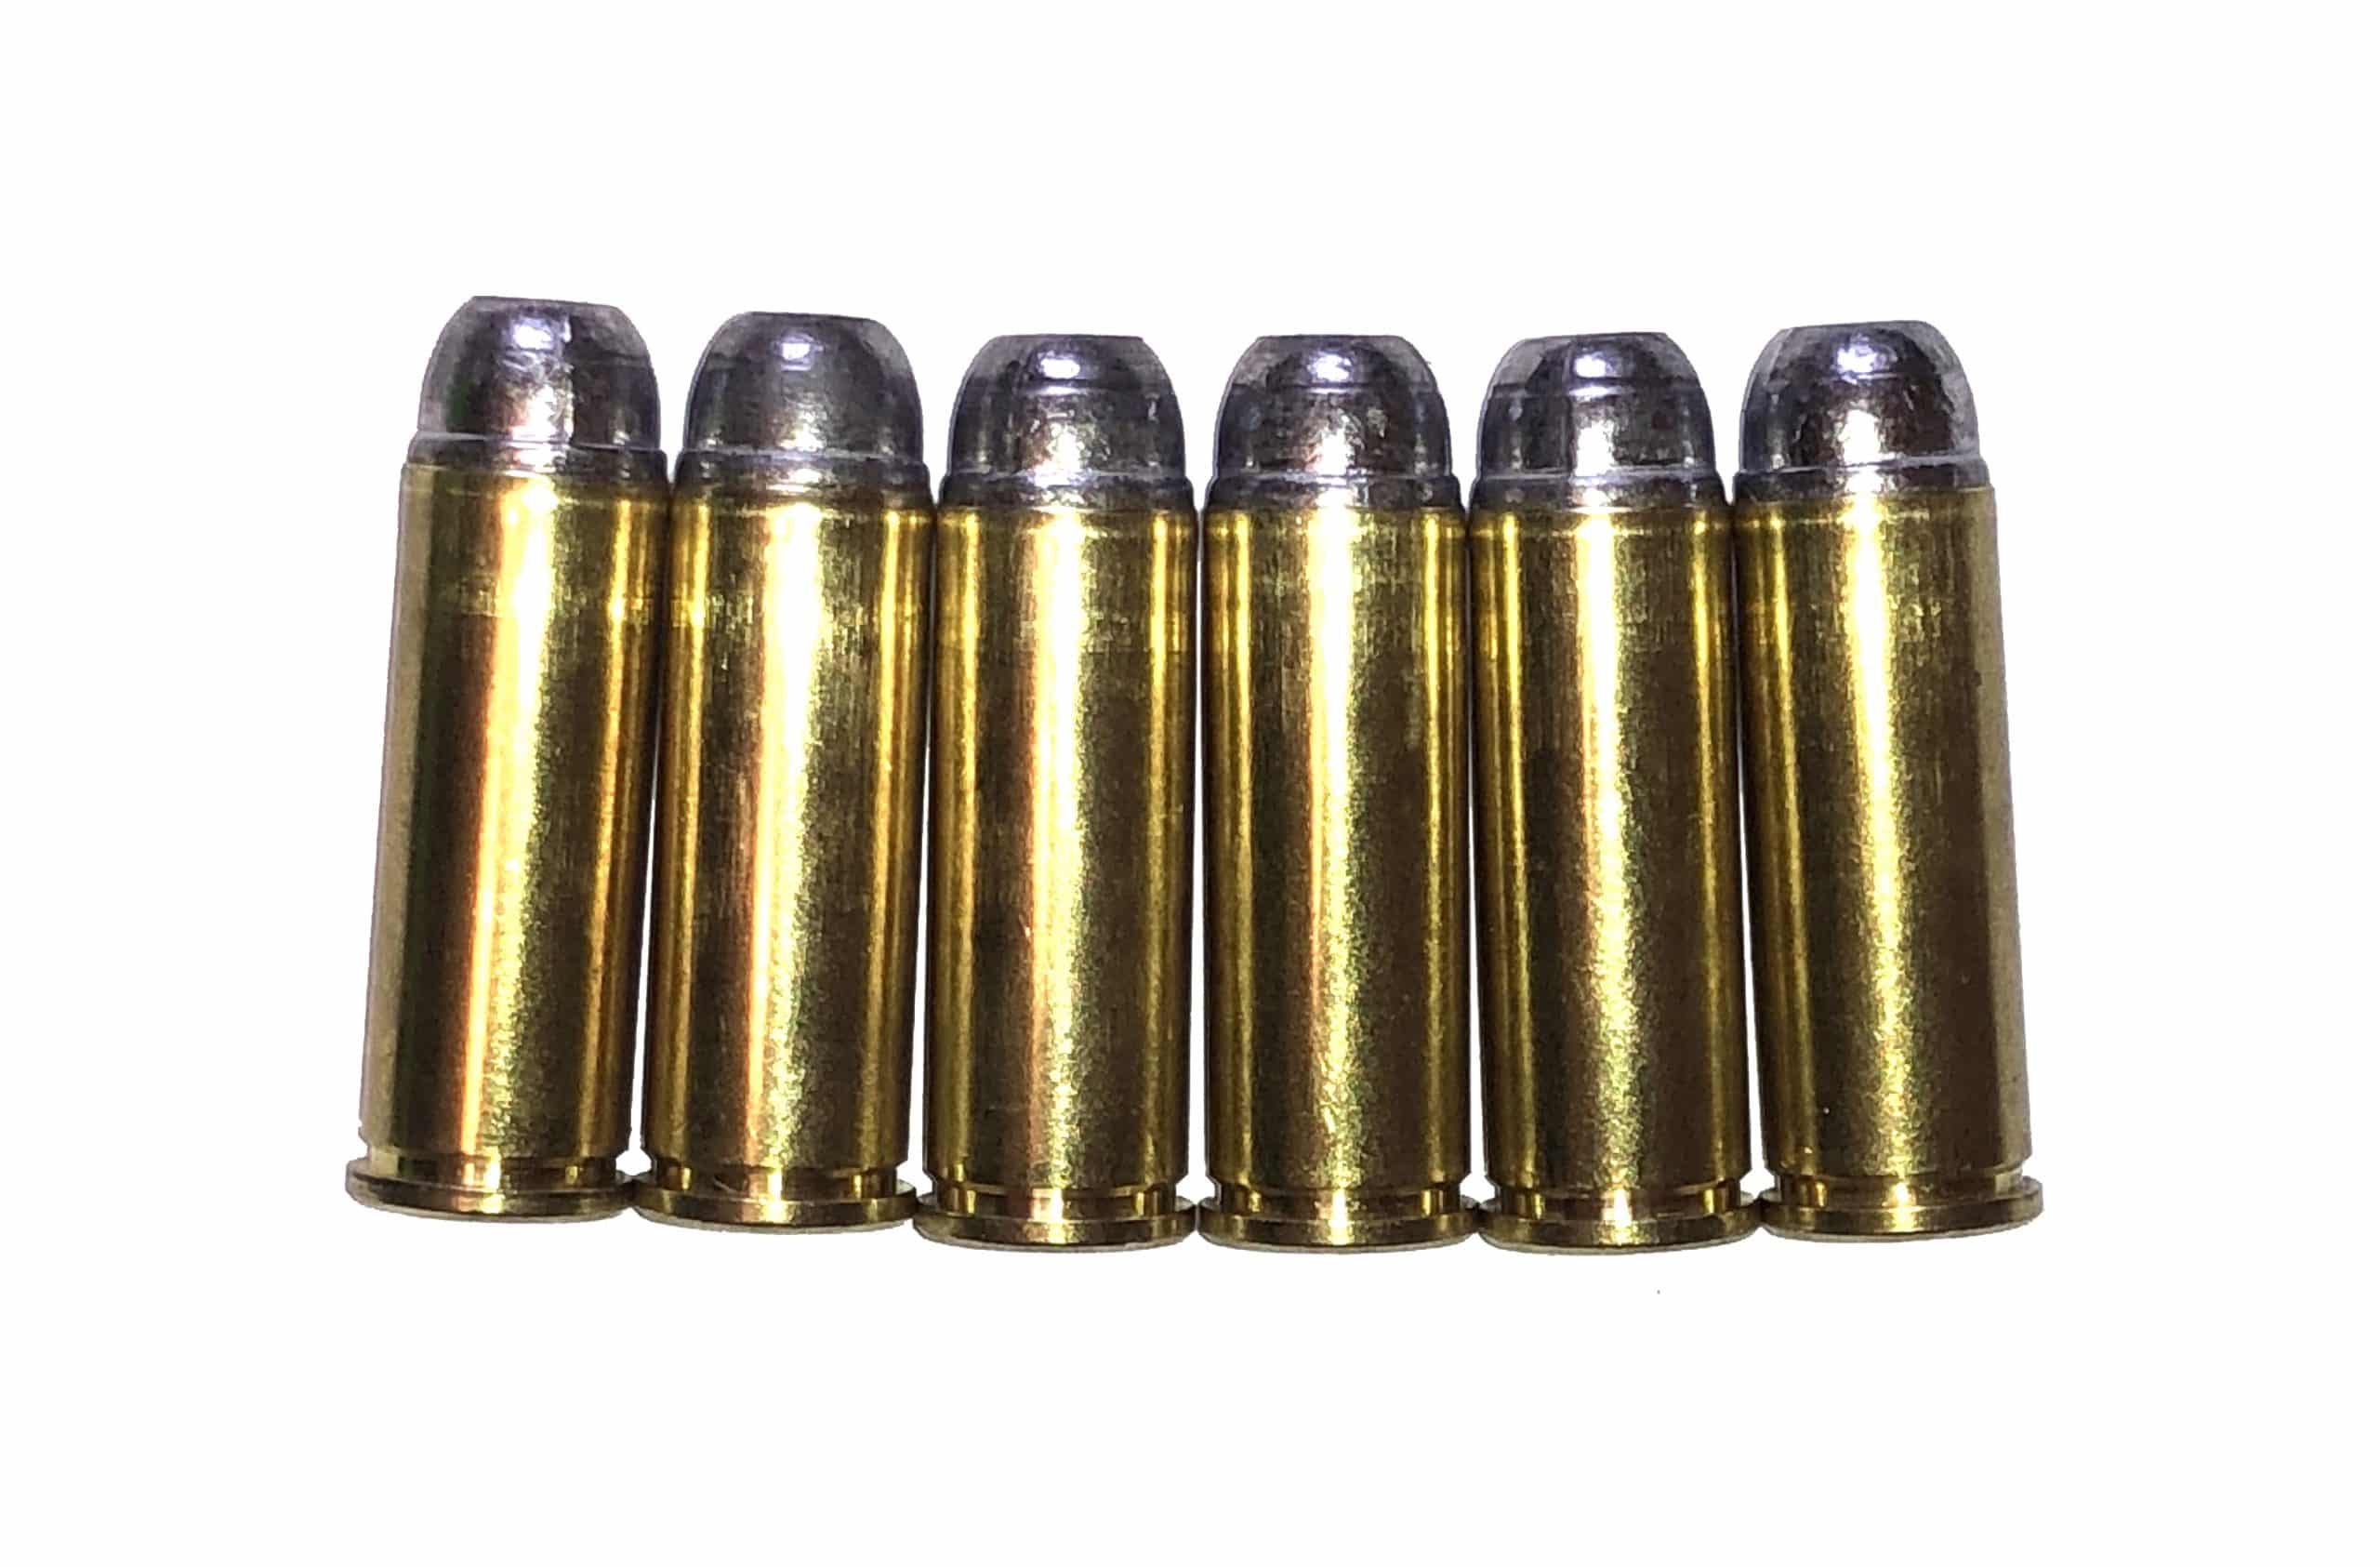 41 Long Colt Dummy Rounds Snap Caps Fake Bullets J&M Spec INERT